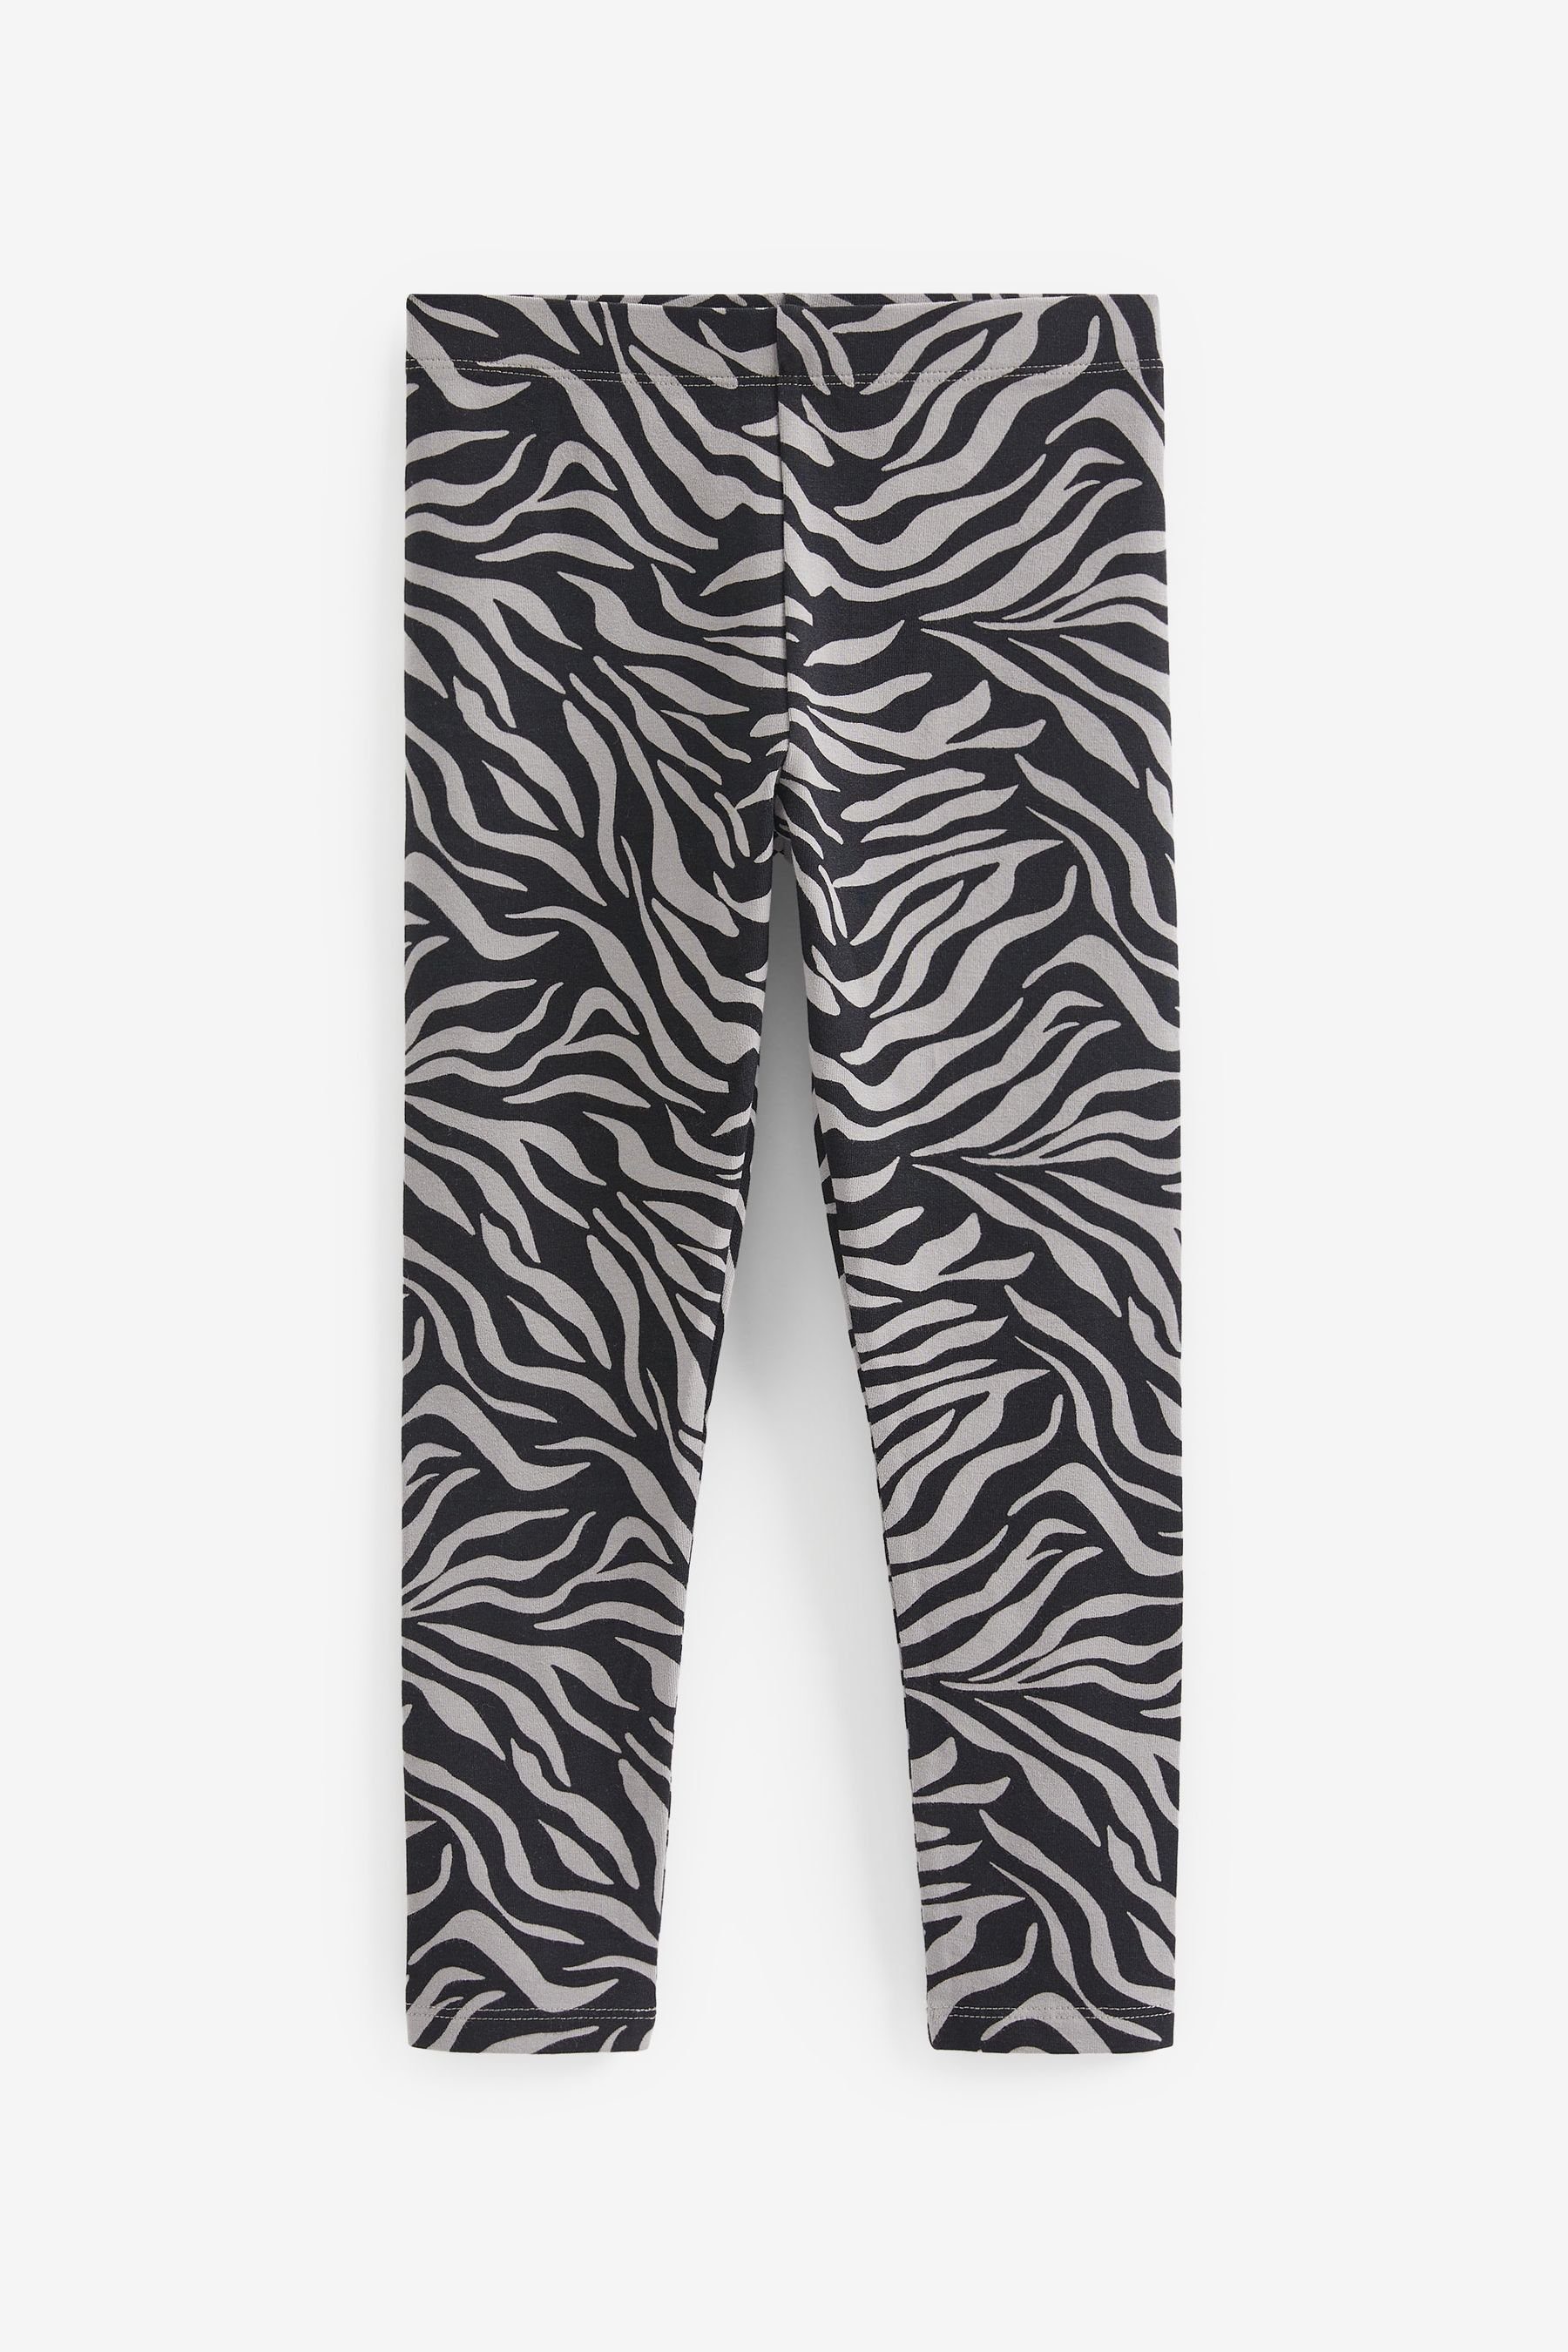 Print/ Print Next Animal Neutral/ Black/ Grey/ Zebra (5-tlg) Leggings, Leggings 5er-Pack